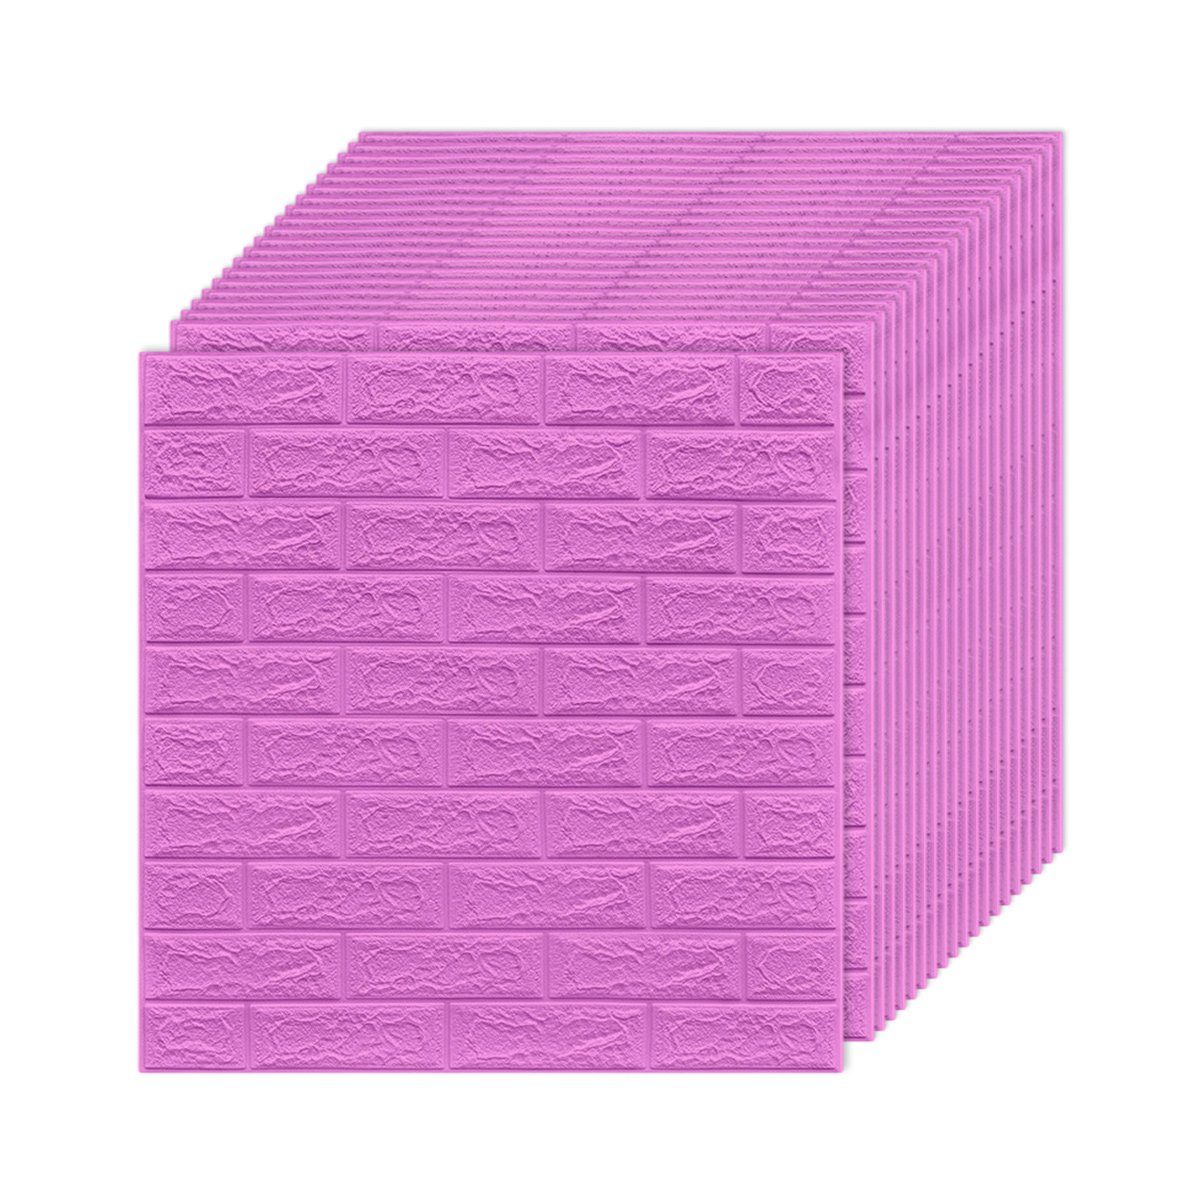 Jormftte Wandtattoo 3D Wandpaneele Selbstklebend,Wandtattoo Küche Ziegelstein für Wanddeko Violett